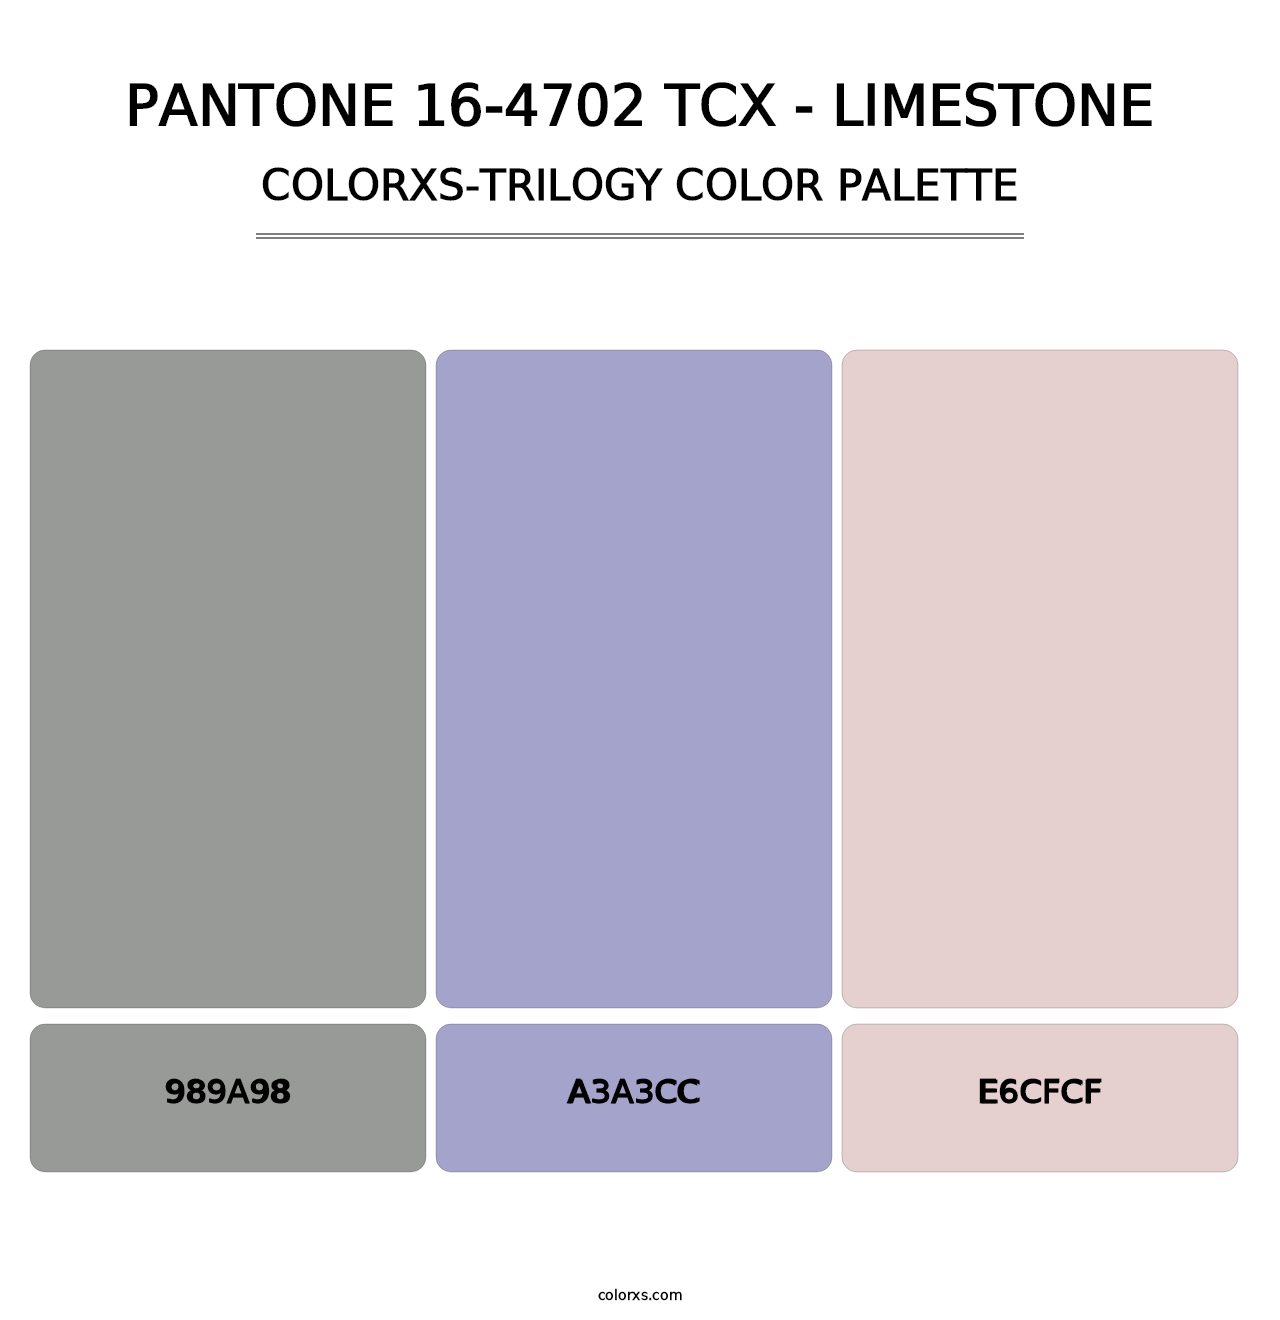 PANTONE 16-4702 TCX - Limestone - Colorxs Trilogy Palette